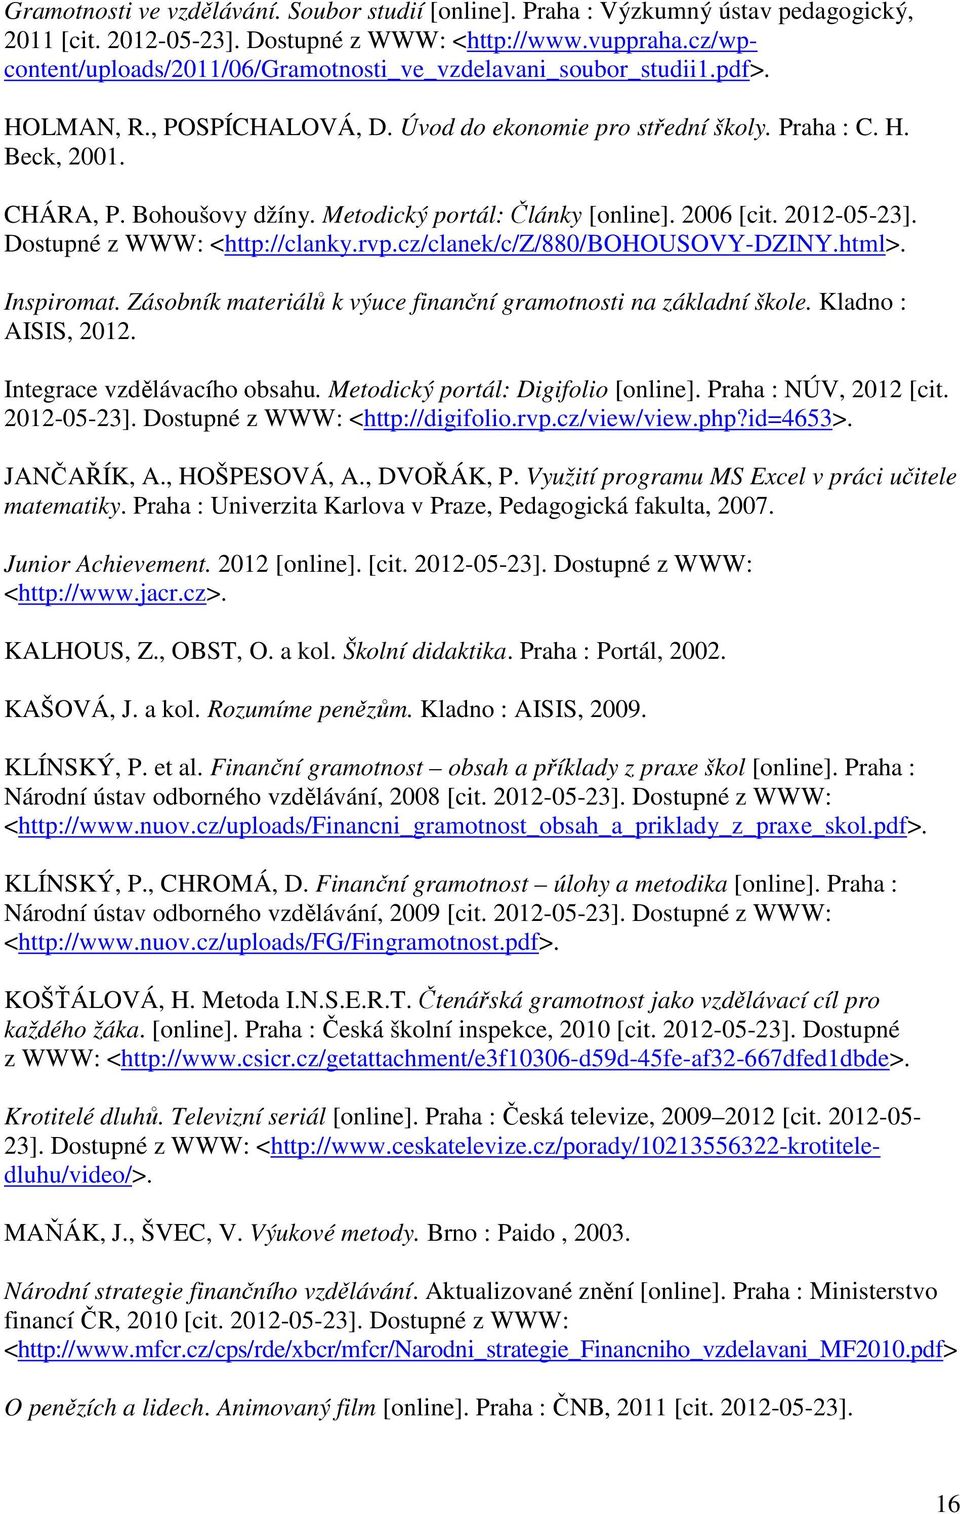 Metodický portál: Články [online]. 2006 [cit. 2012-05-23]. Dostupné z WWW: <http://clanky.rvp.cz/clanek/c/z/880/bohousovy-dziny.html>. Inspiromat.